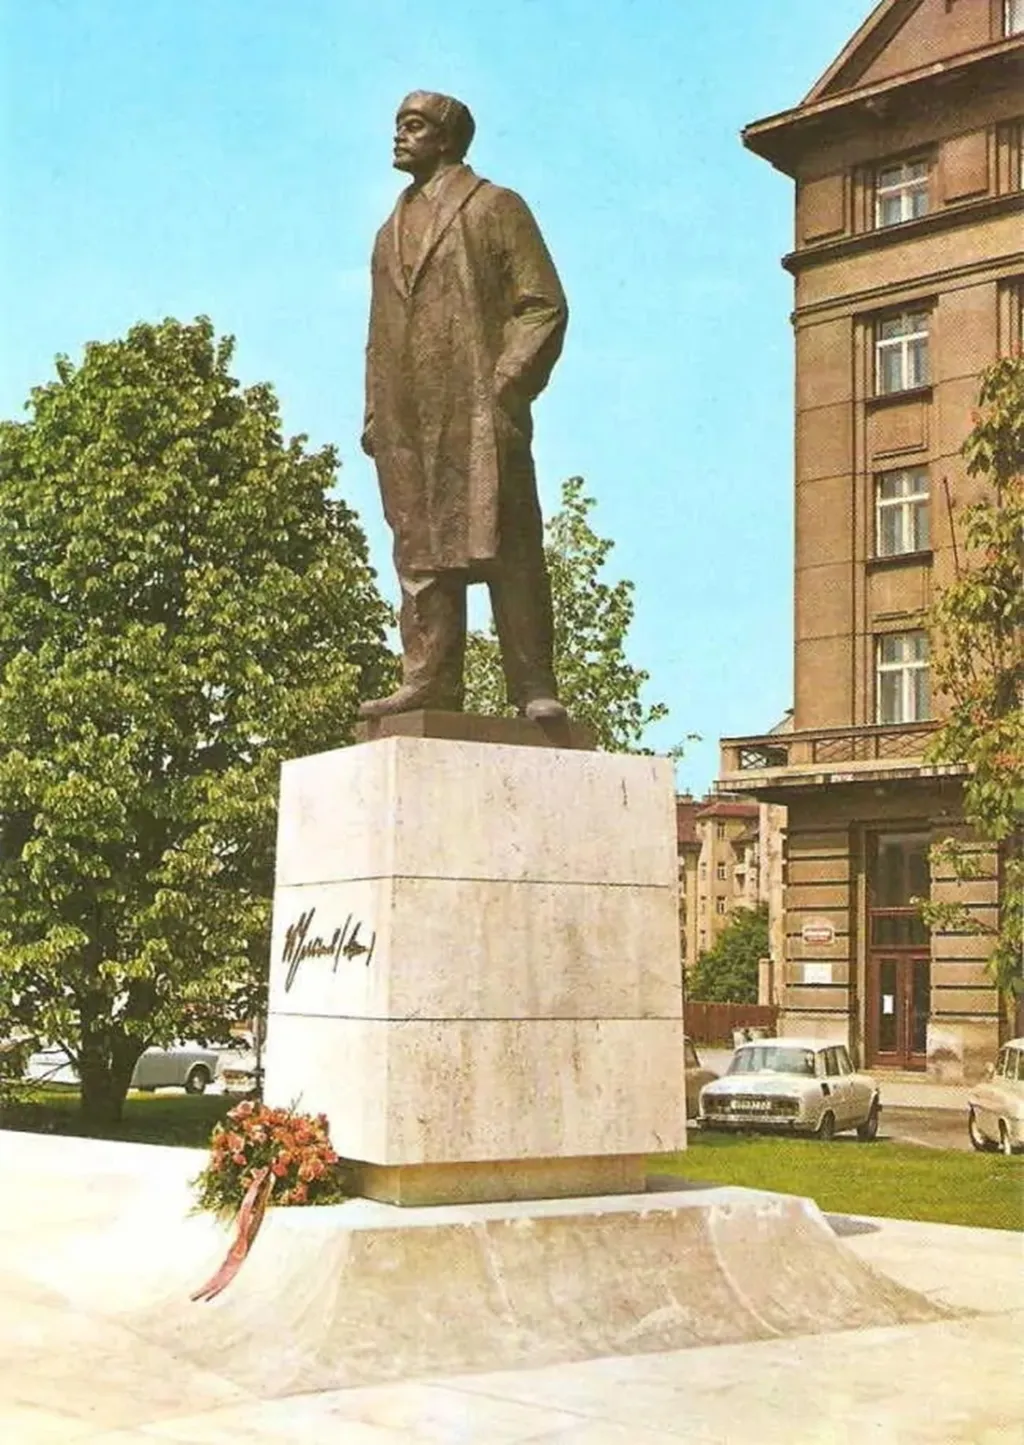 Socha V. I. Lenina hleděla na náměstí Říjnové revoluce v Praze 6. Po roce 1990 se z náměstí Říjnové revoluce stalo Vítězné náměstí a zmizel i Leninův pomník